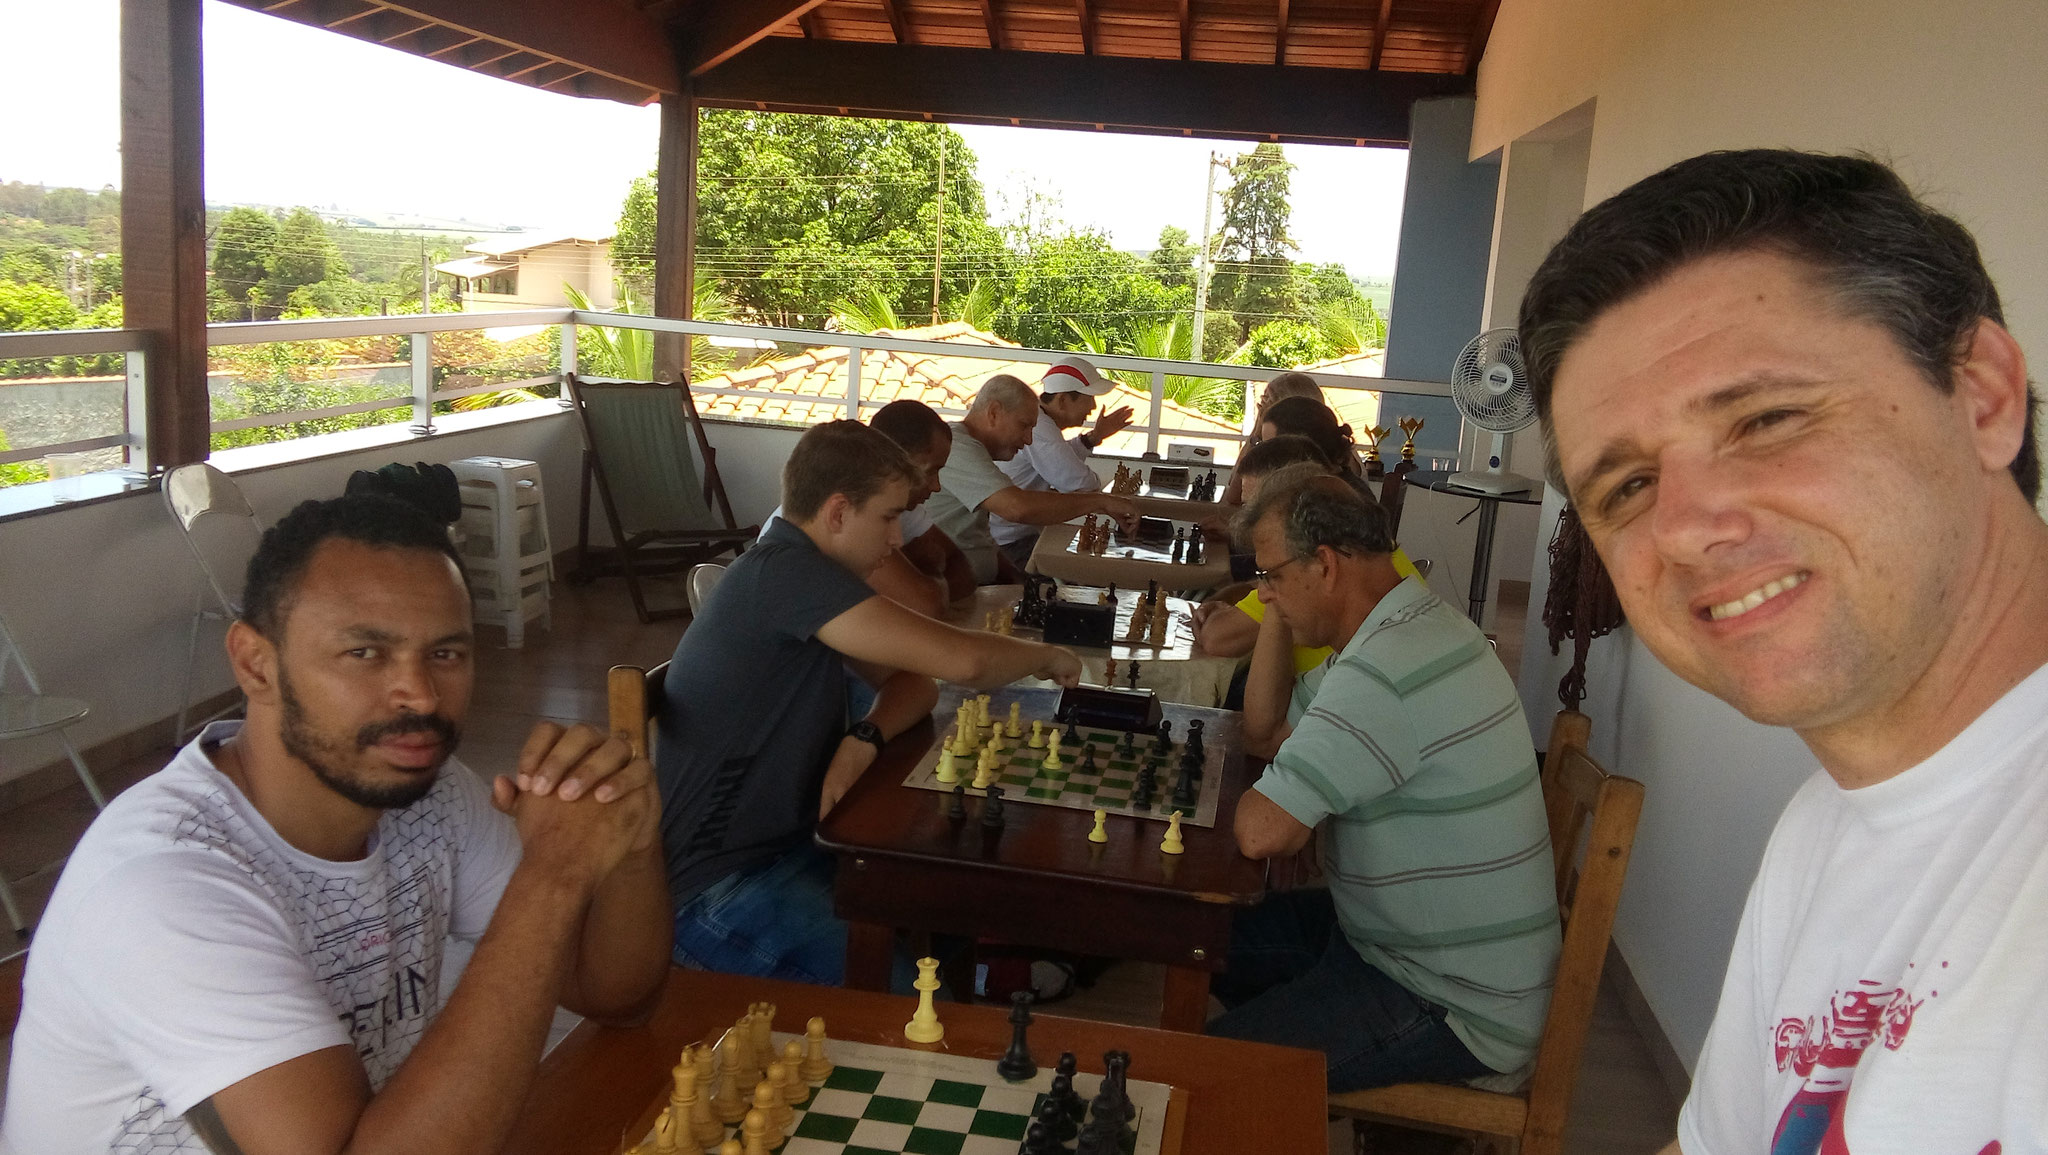 Torneio da Amizade de Xadrez - Site Jimdo de ivanpfxadrezdescalvado